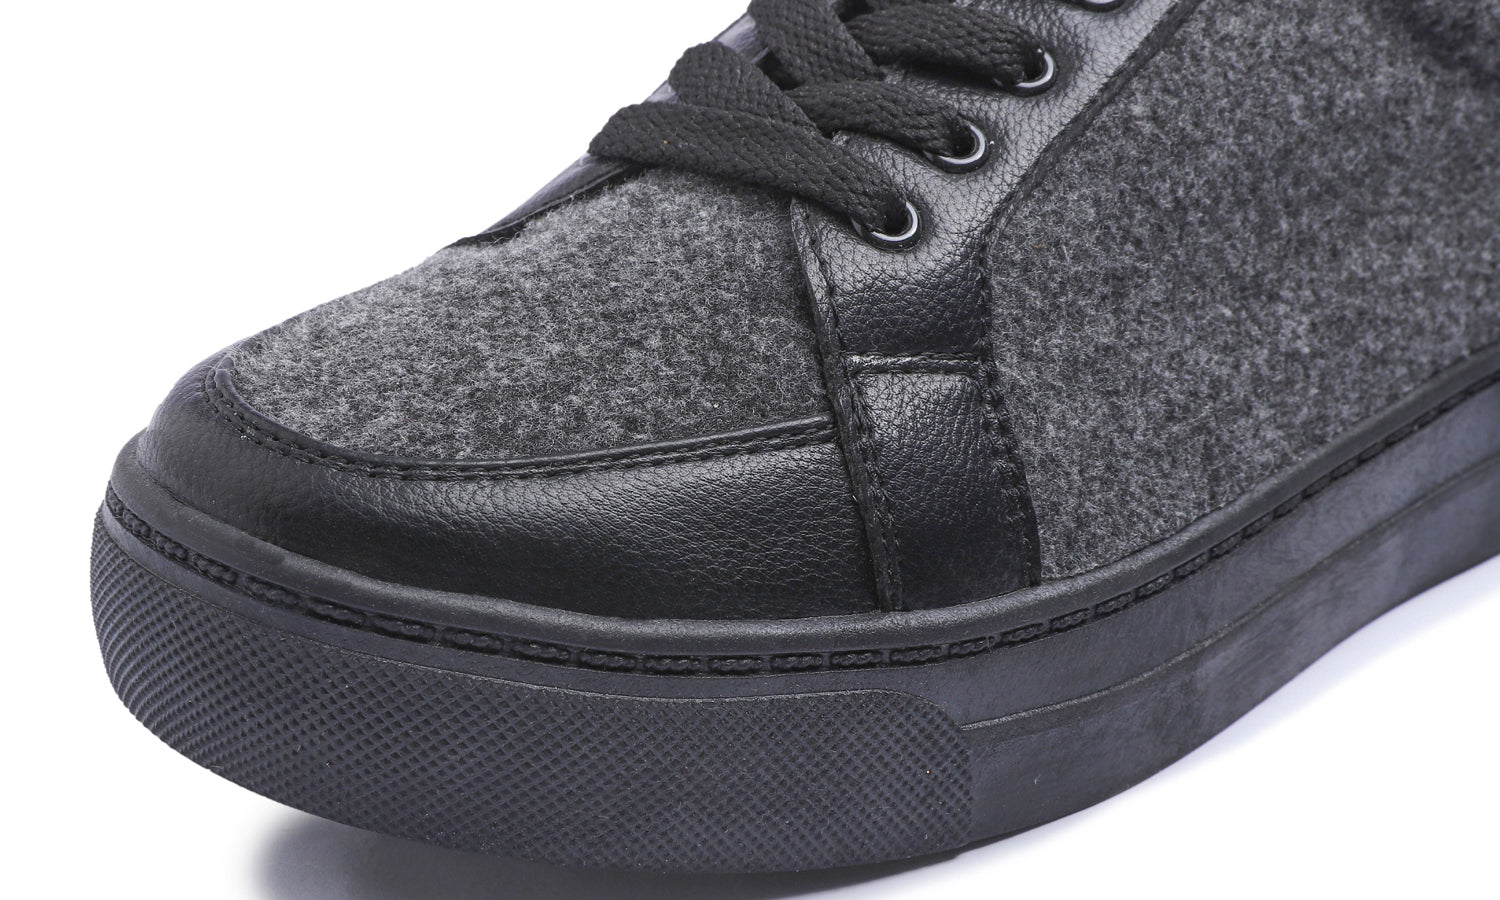 Feversole Women's Winter Vegan Leather Lightweight Platform Lace-Up Street Sneakers Dark Grey Faux Woolen PU